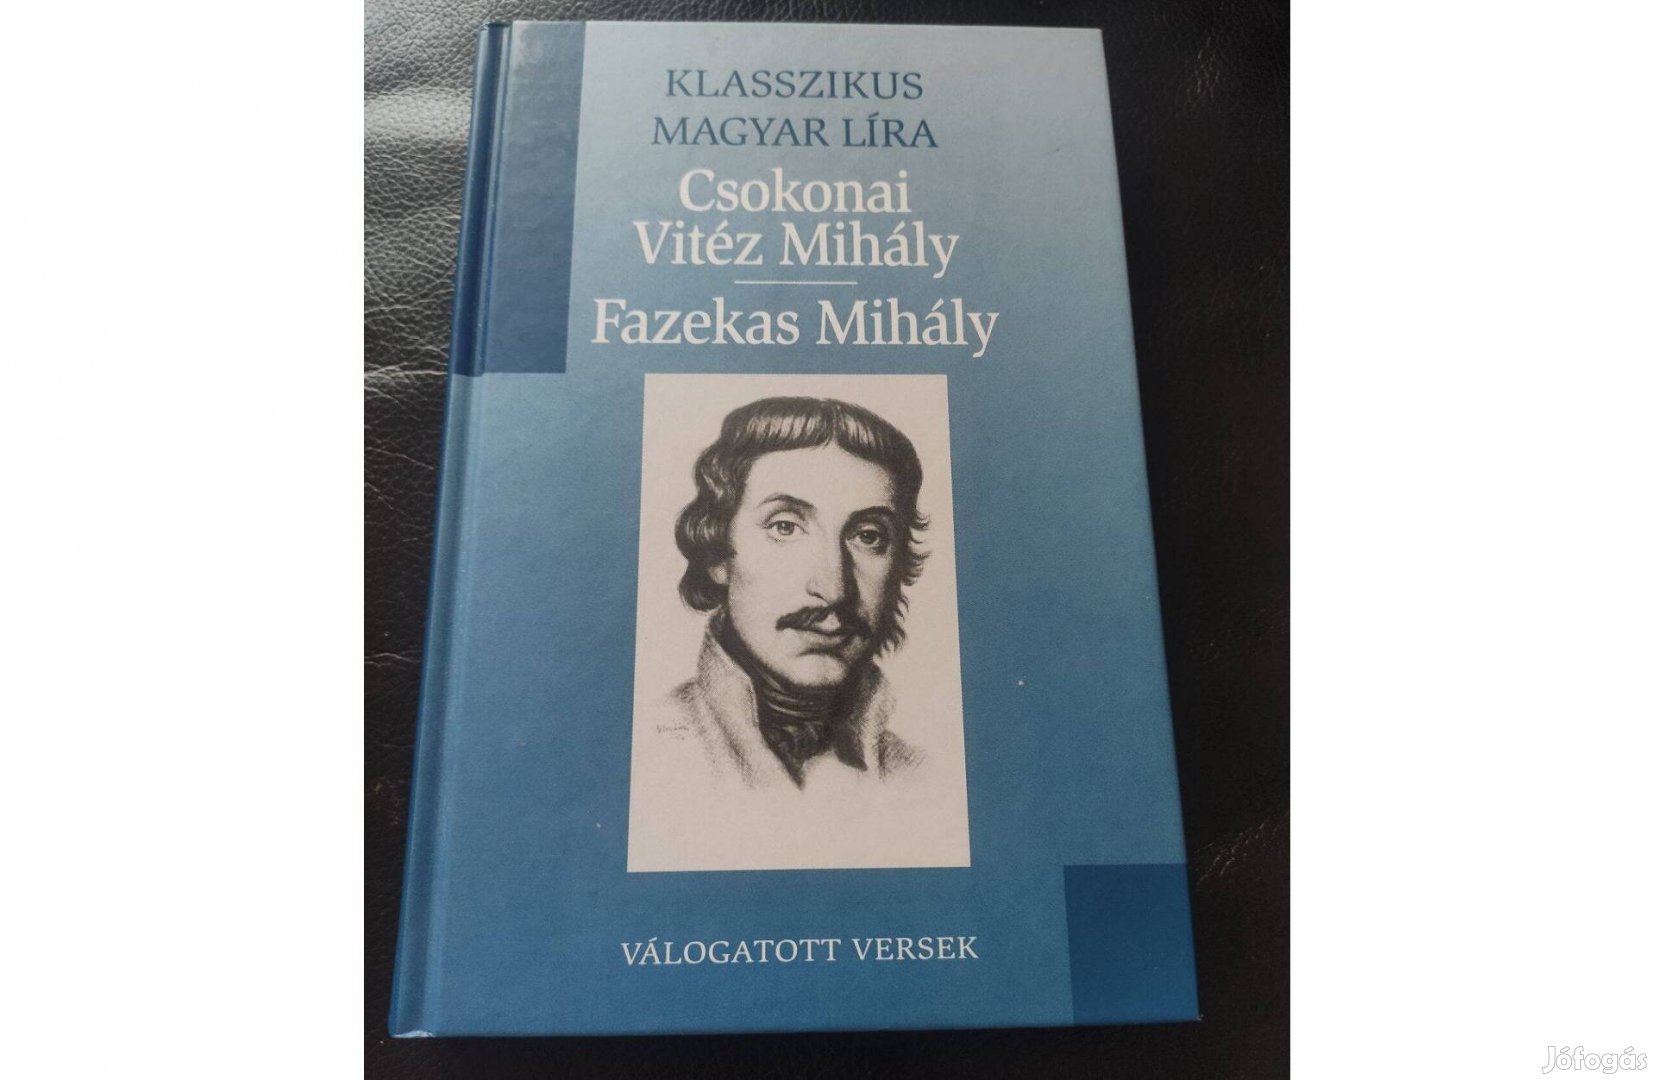 Csokonyi Vitéz Mihály- Fazekas Mihály - Klasszikus magyar líra Újszerű